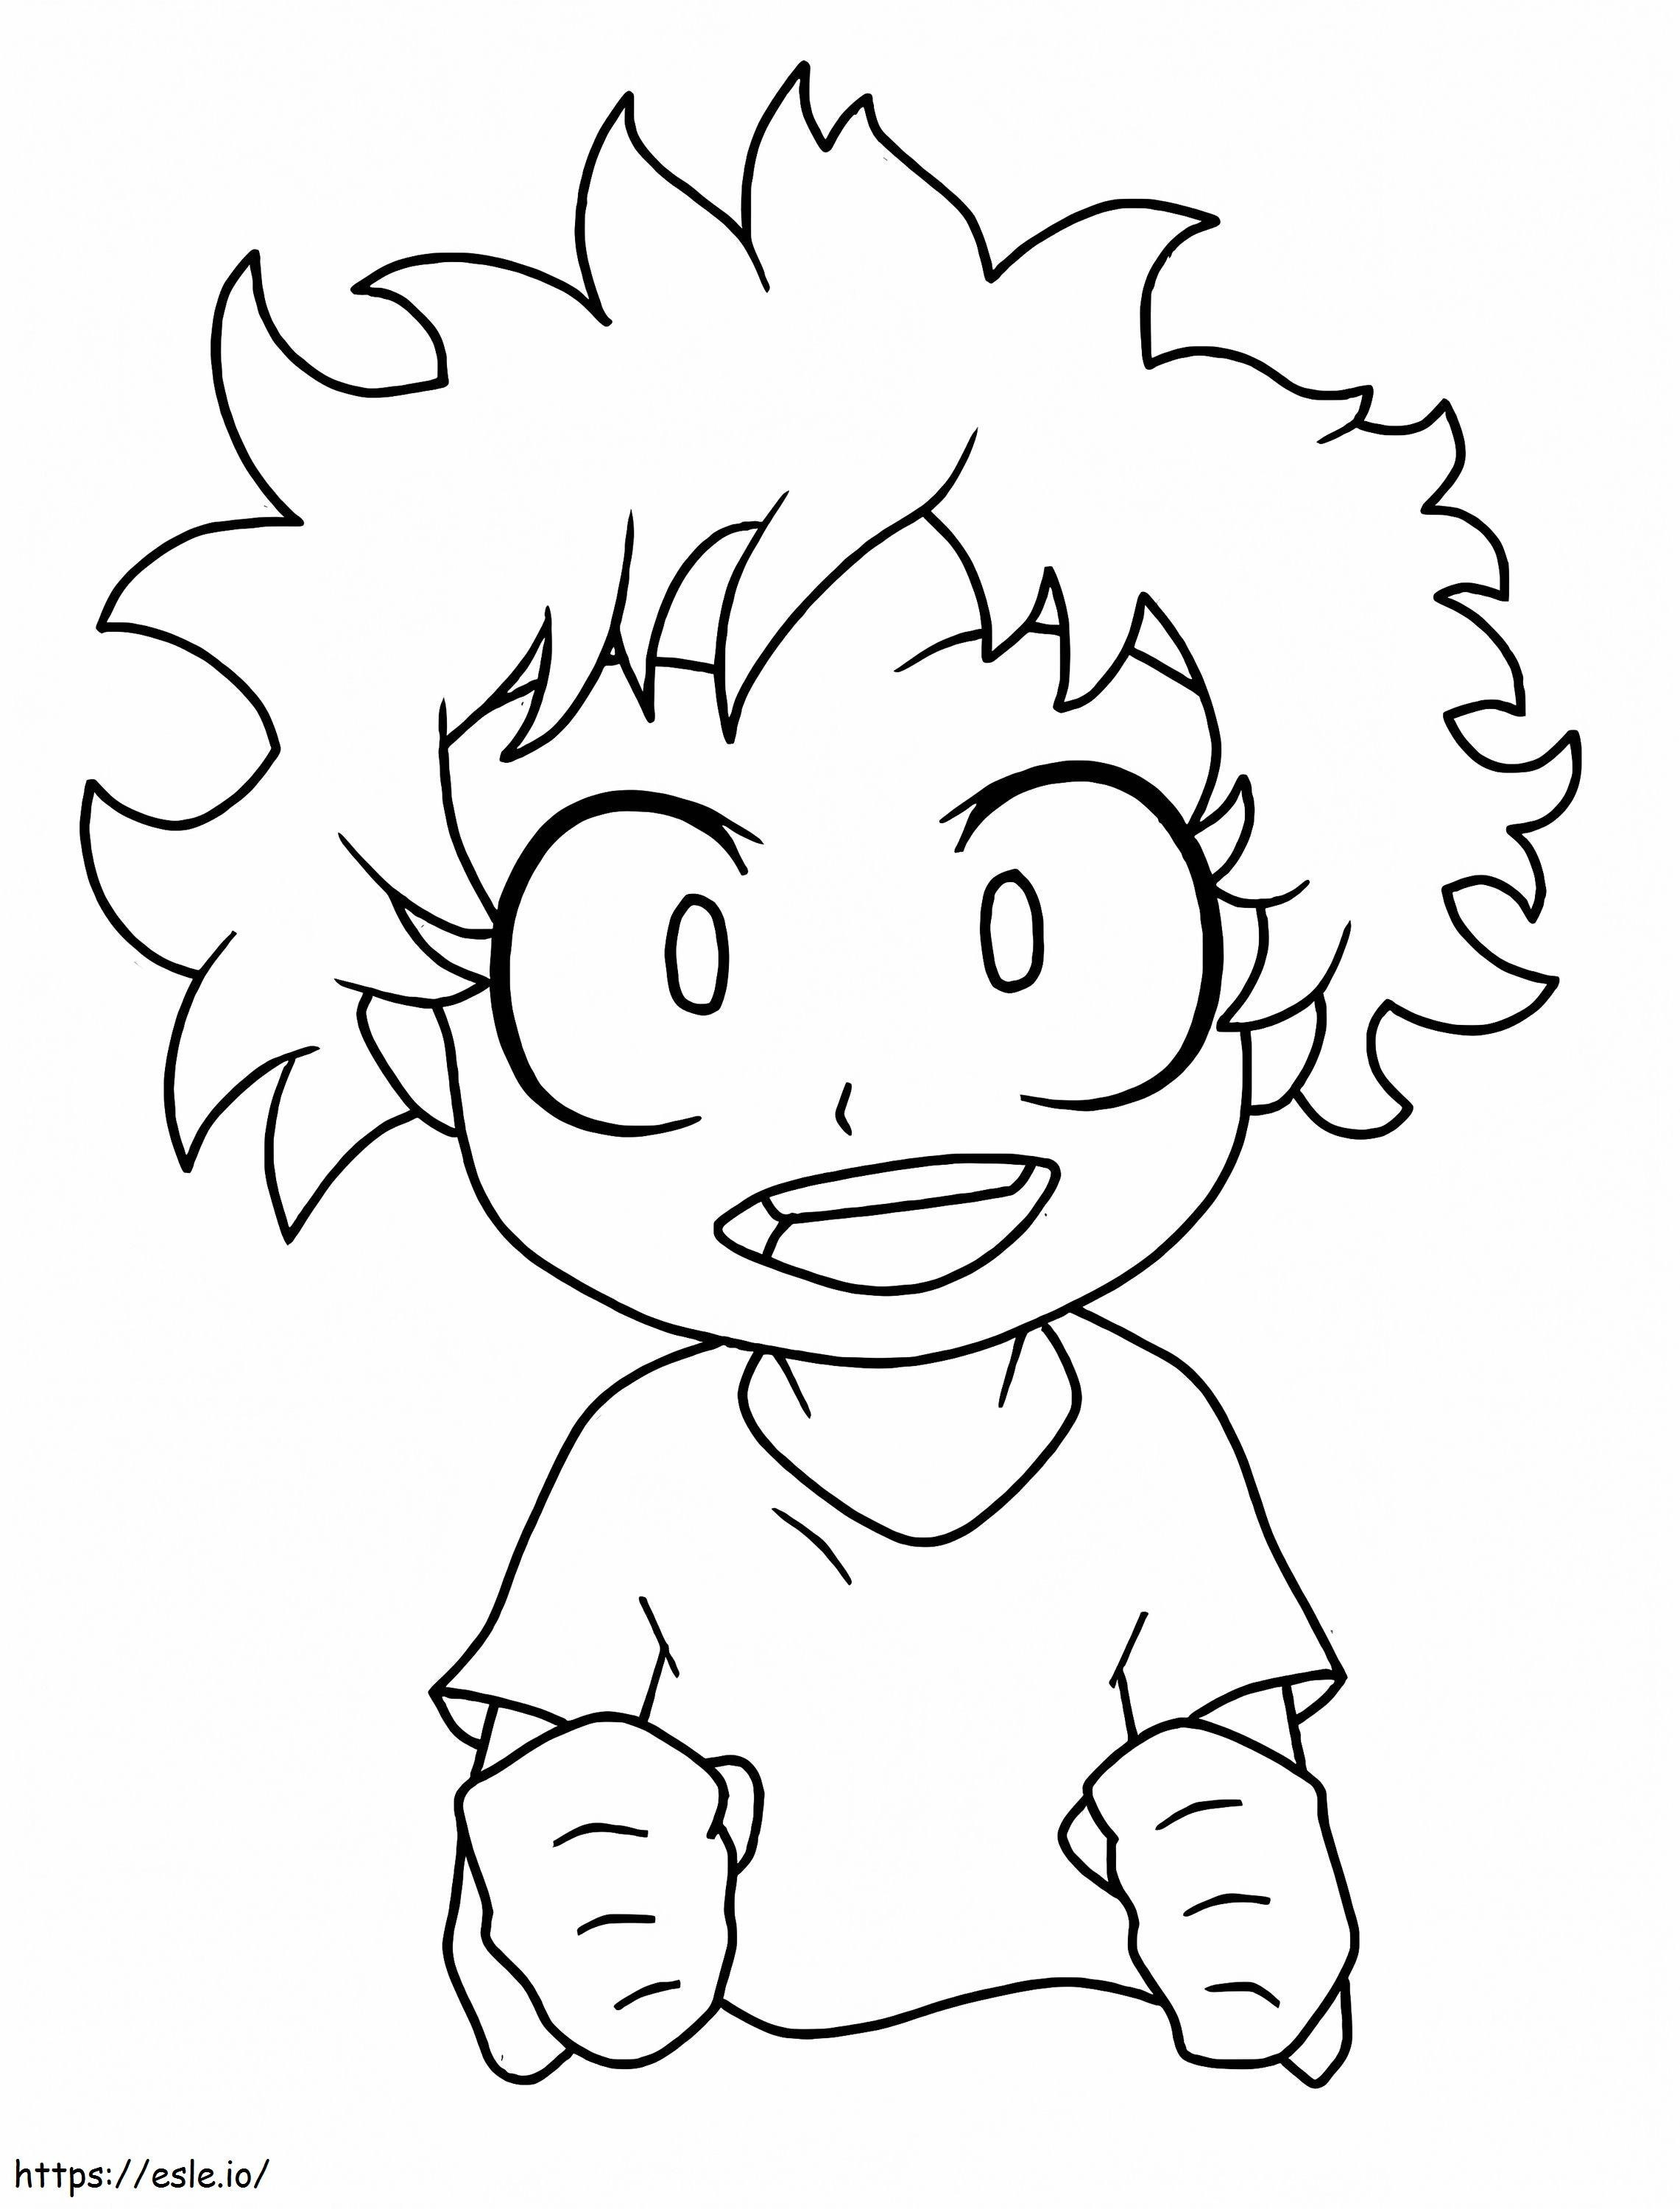 Kid Midoriya coloring page